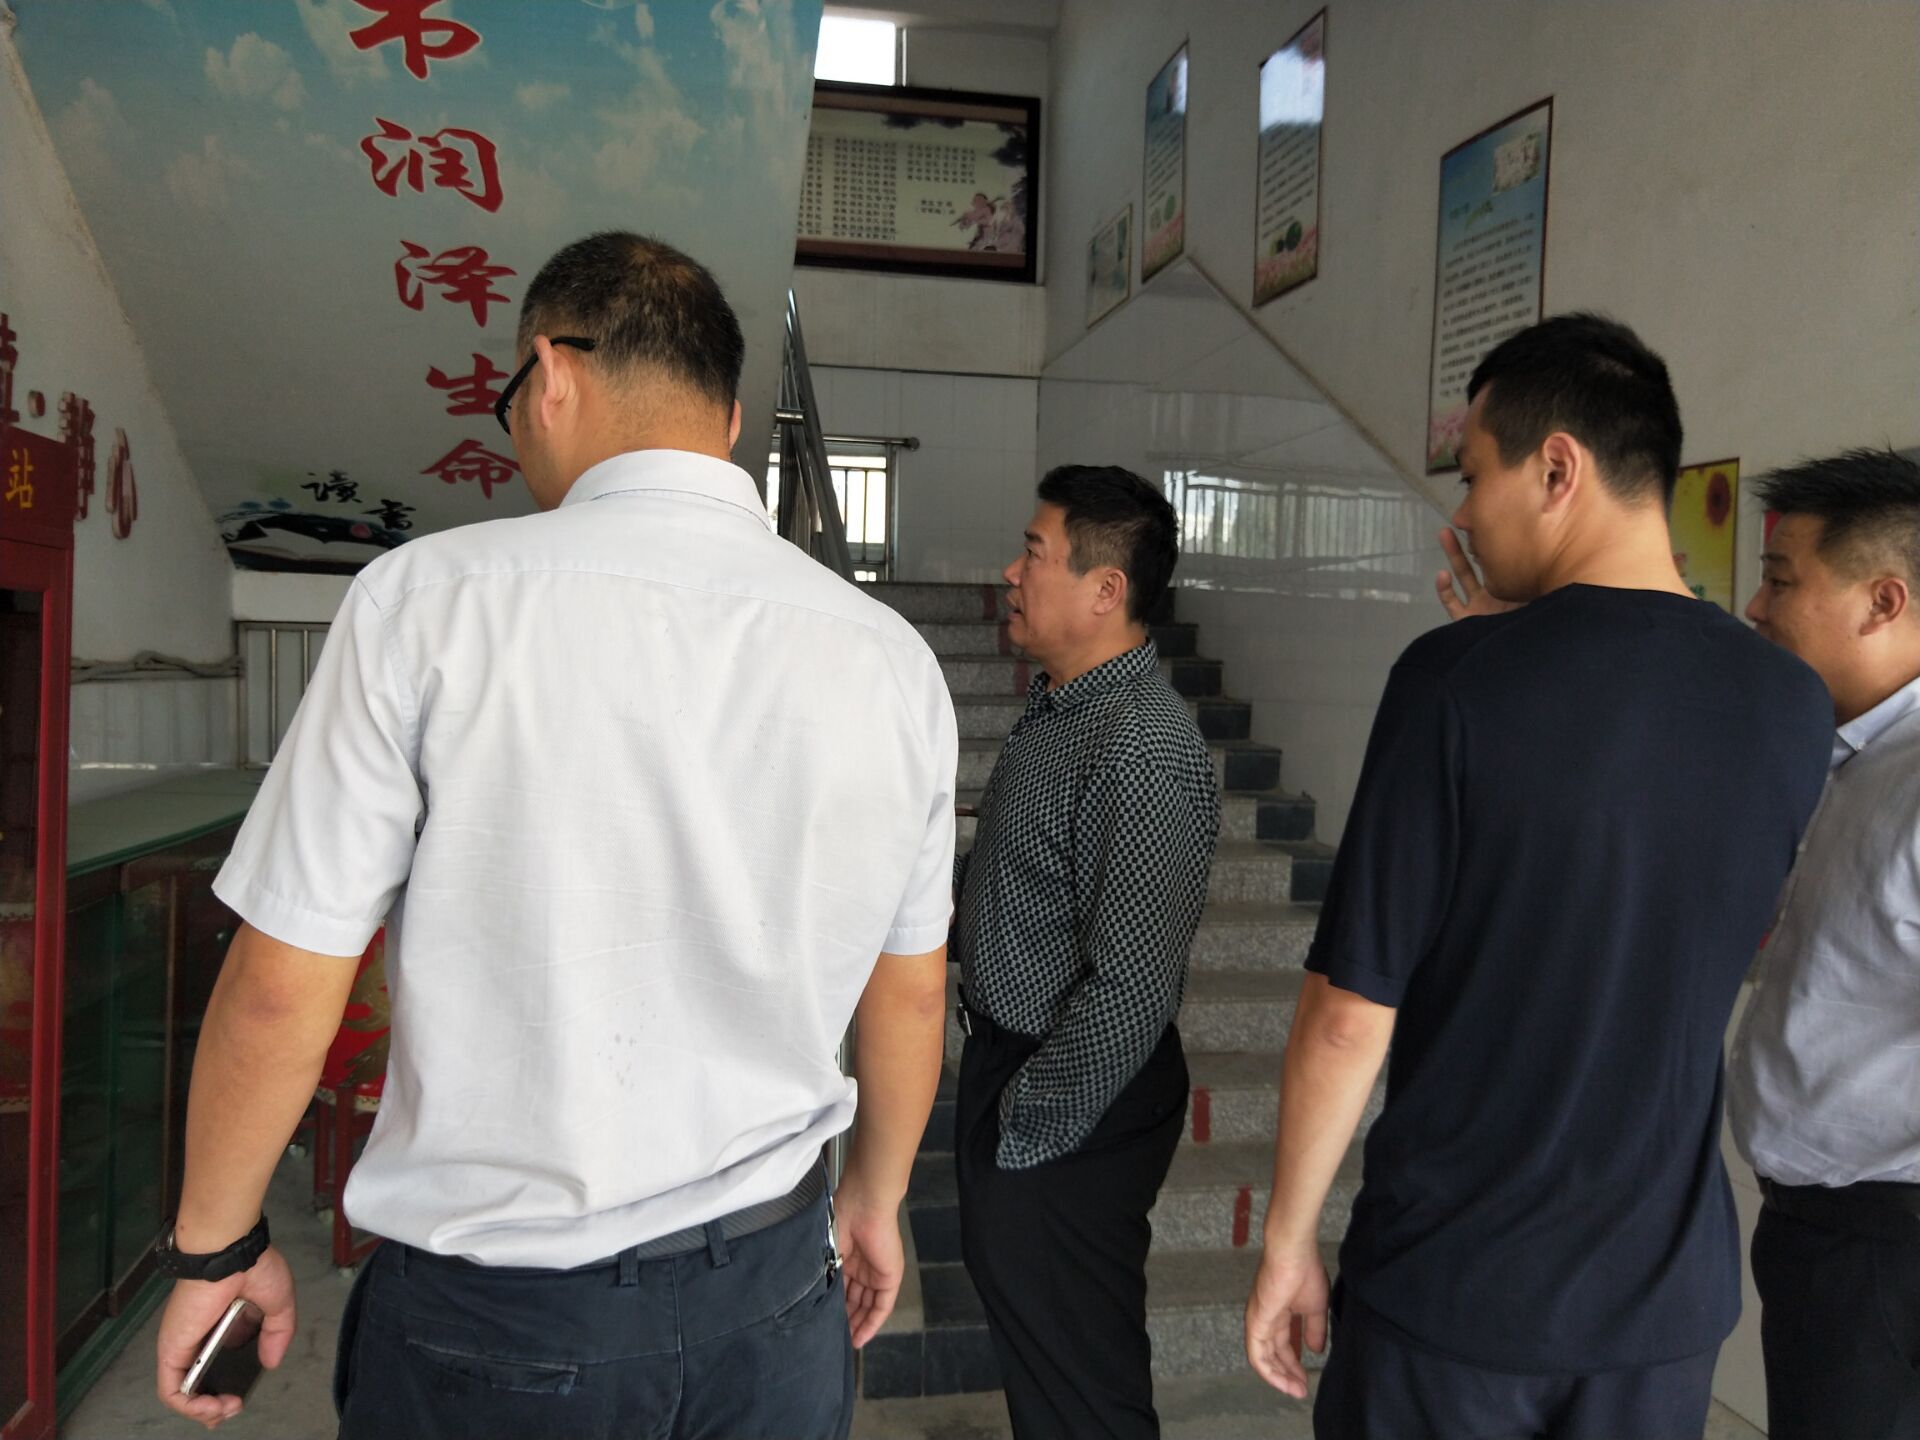 责任重于泰山 ——徐州市教育局检查港头小学安全工作